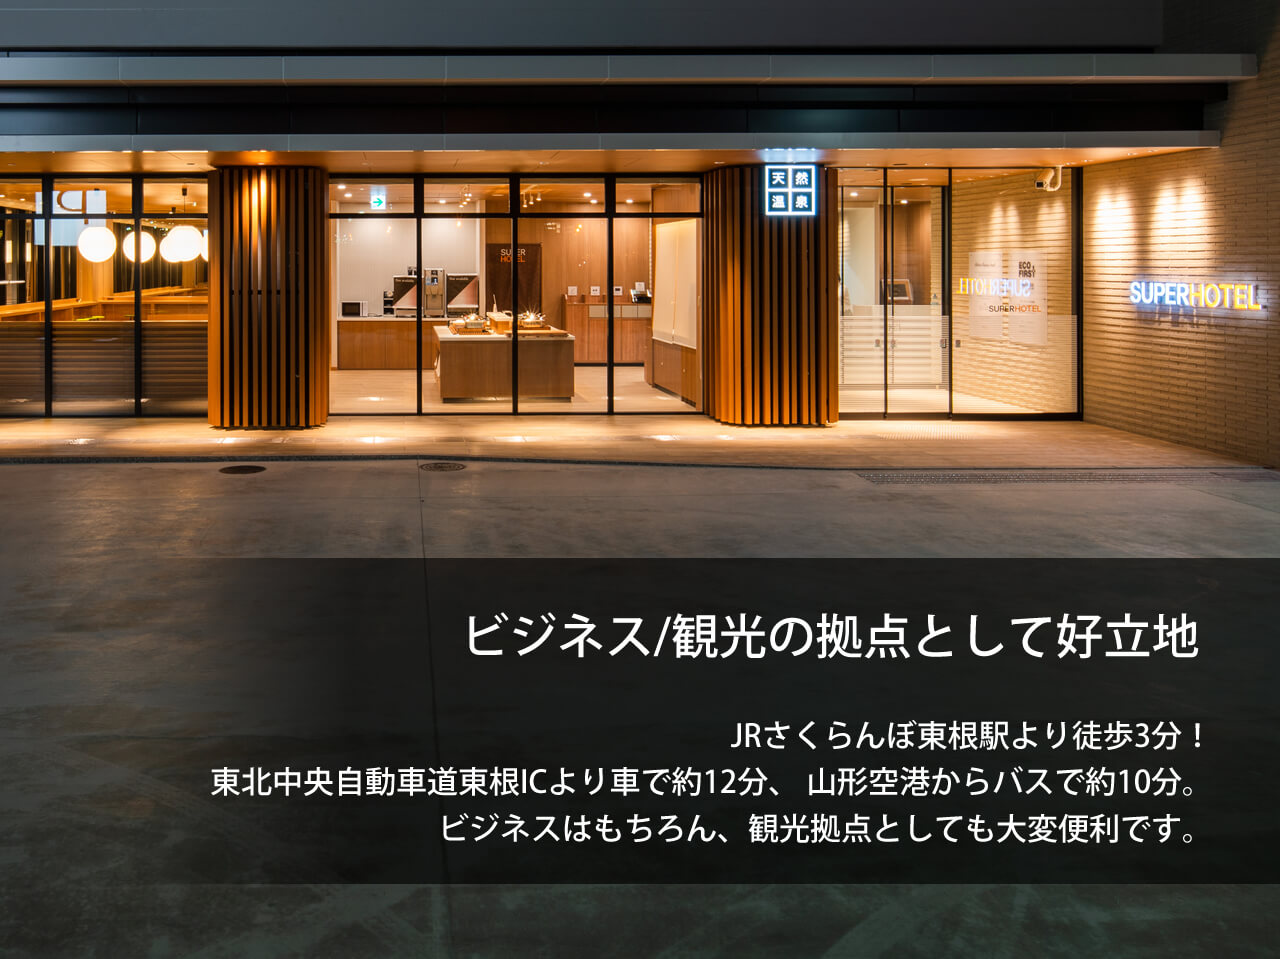 公式最安 スーパーホテル山形 さくらんぼ東根駅前 山形県東根市のビジネスホテル